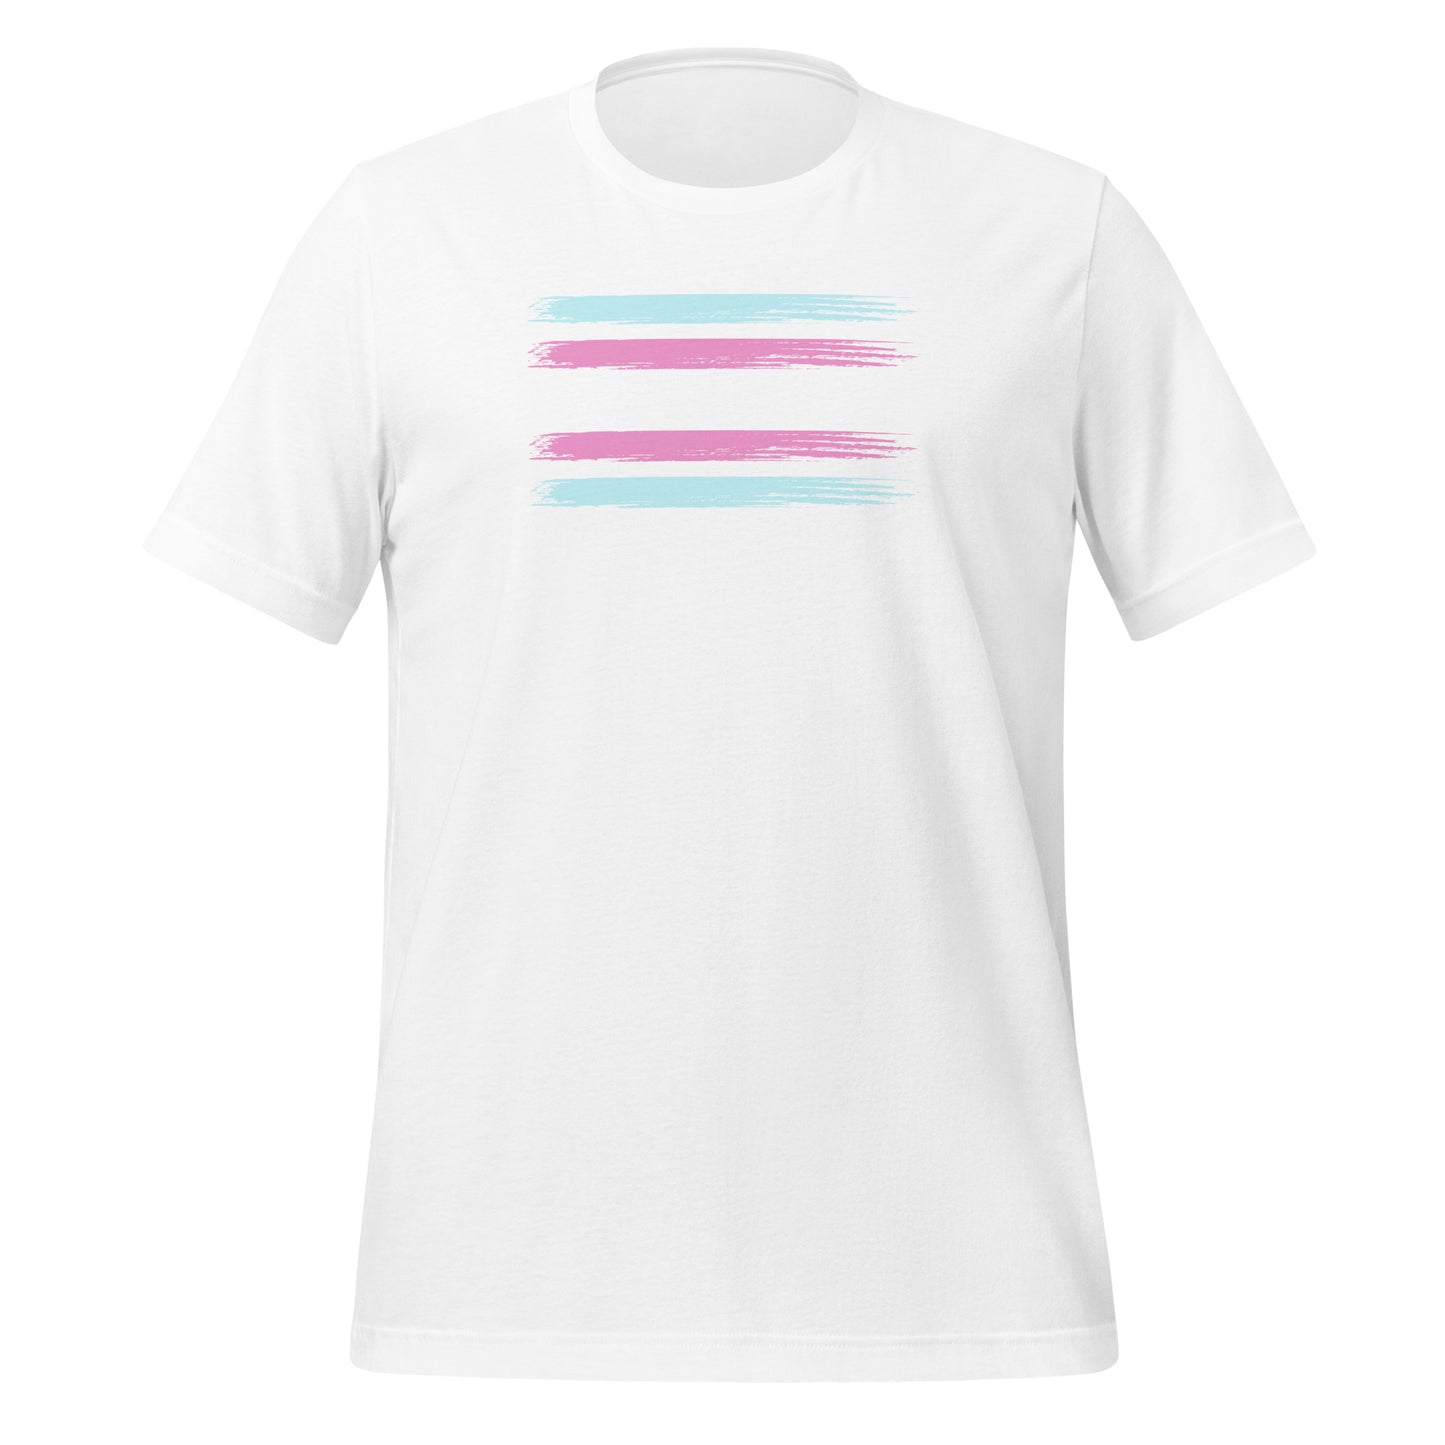 Transgender Pride Flag unisex t-shirt